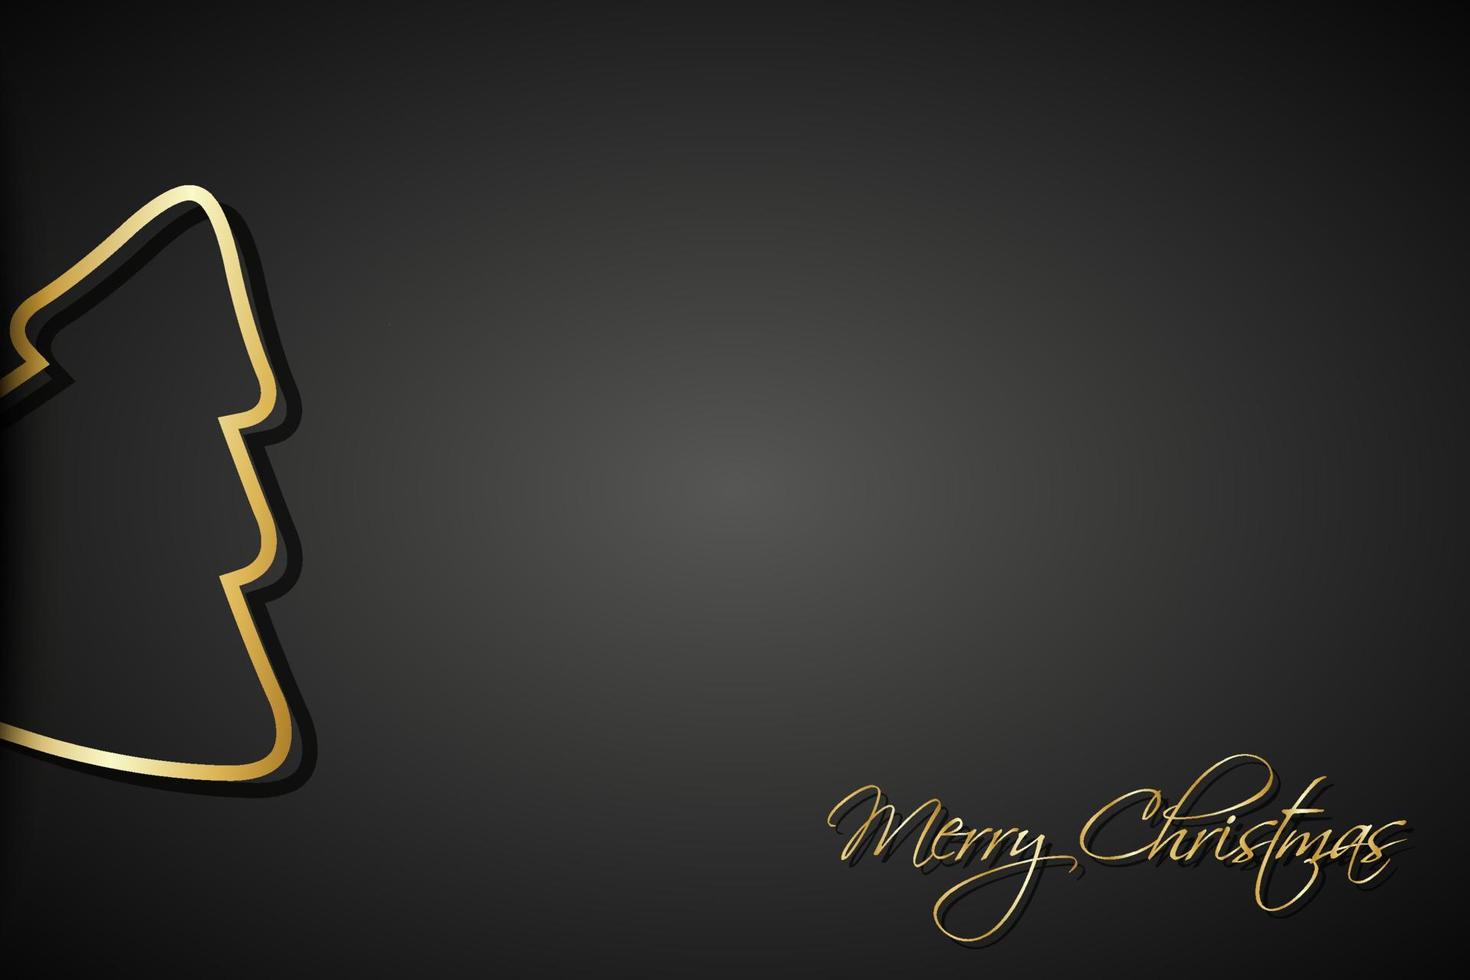 moderna gyllene julgranar på svart bakgrund. semester gratulationskort med god jul tecken vektor